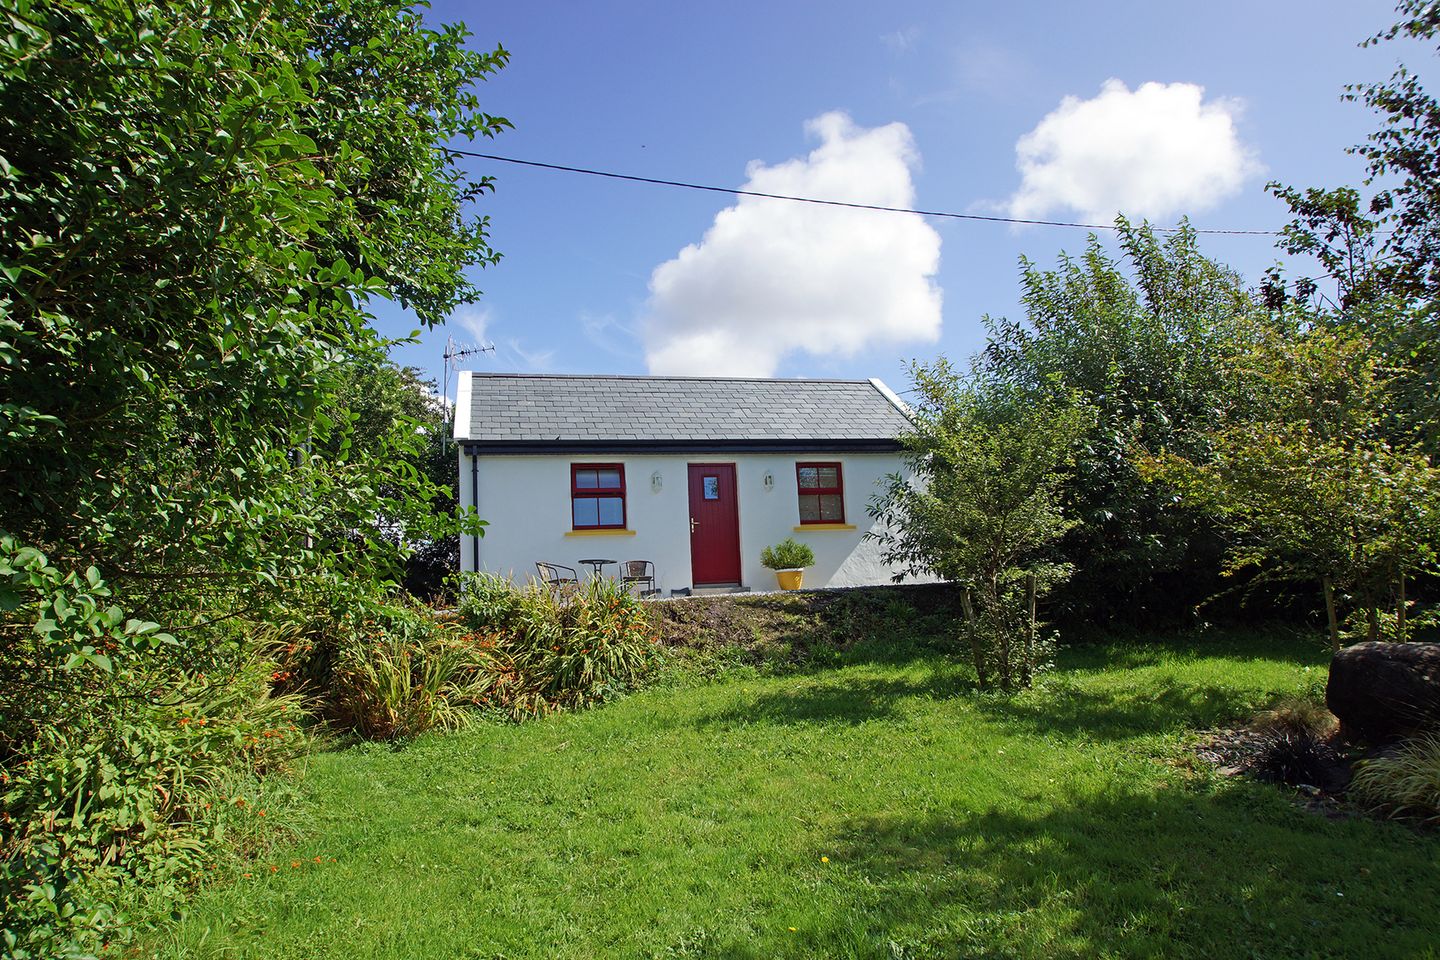 Caherdaniel (I451), Caherdaniel, Co. Kerry